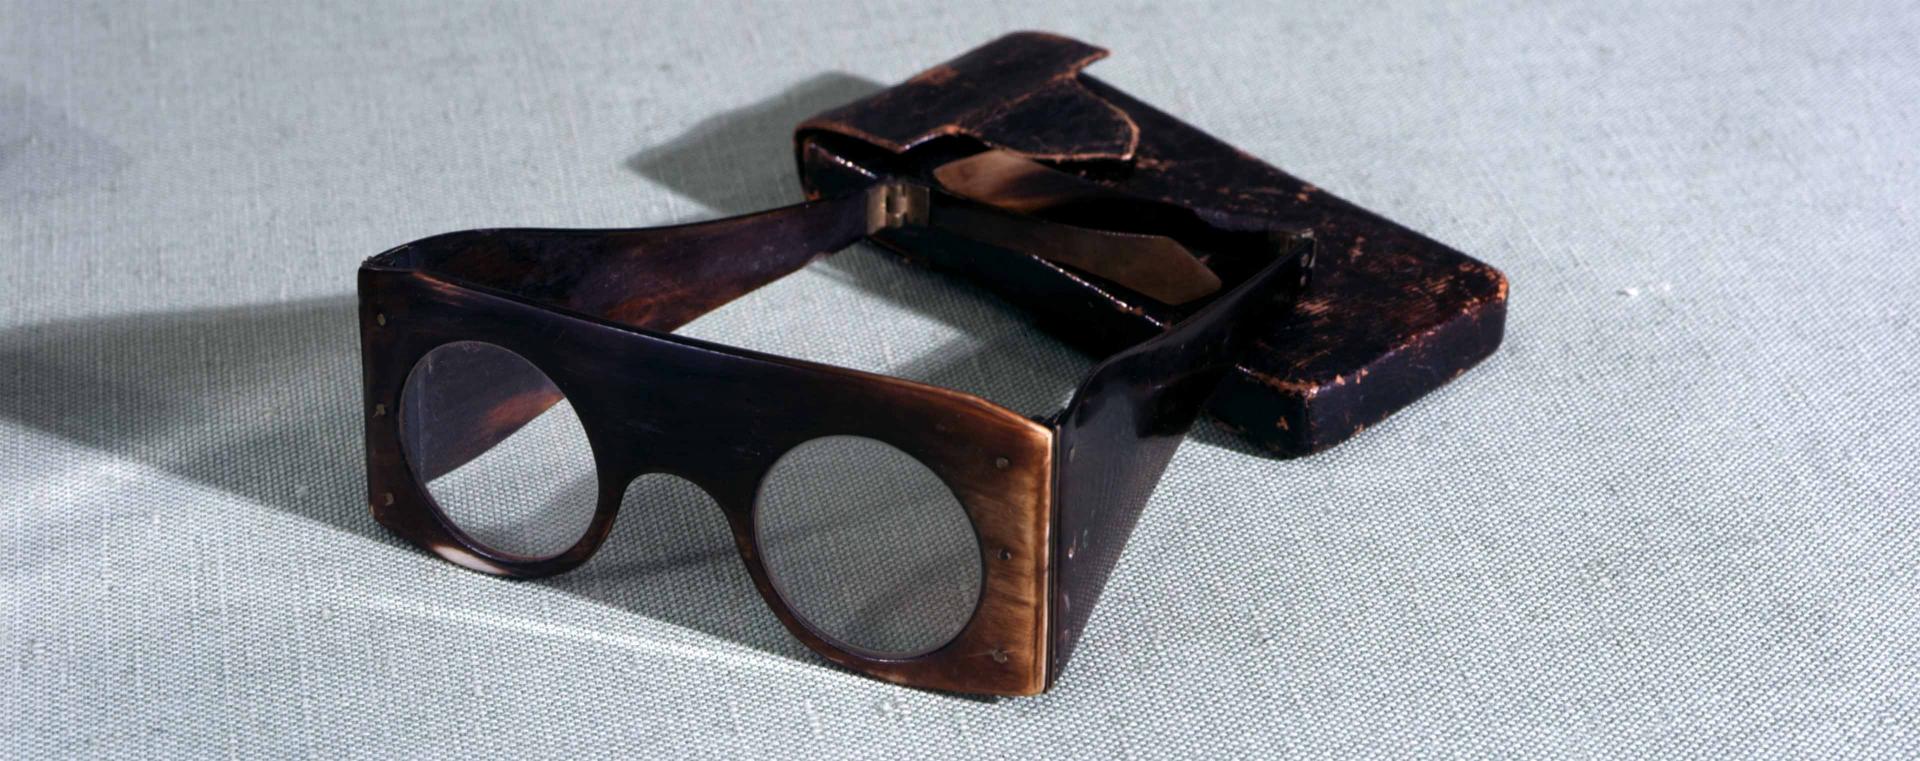 Quadratische Brille mit runden Gläsern, daneben ein passendes Etui.